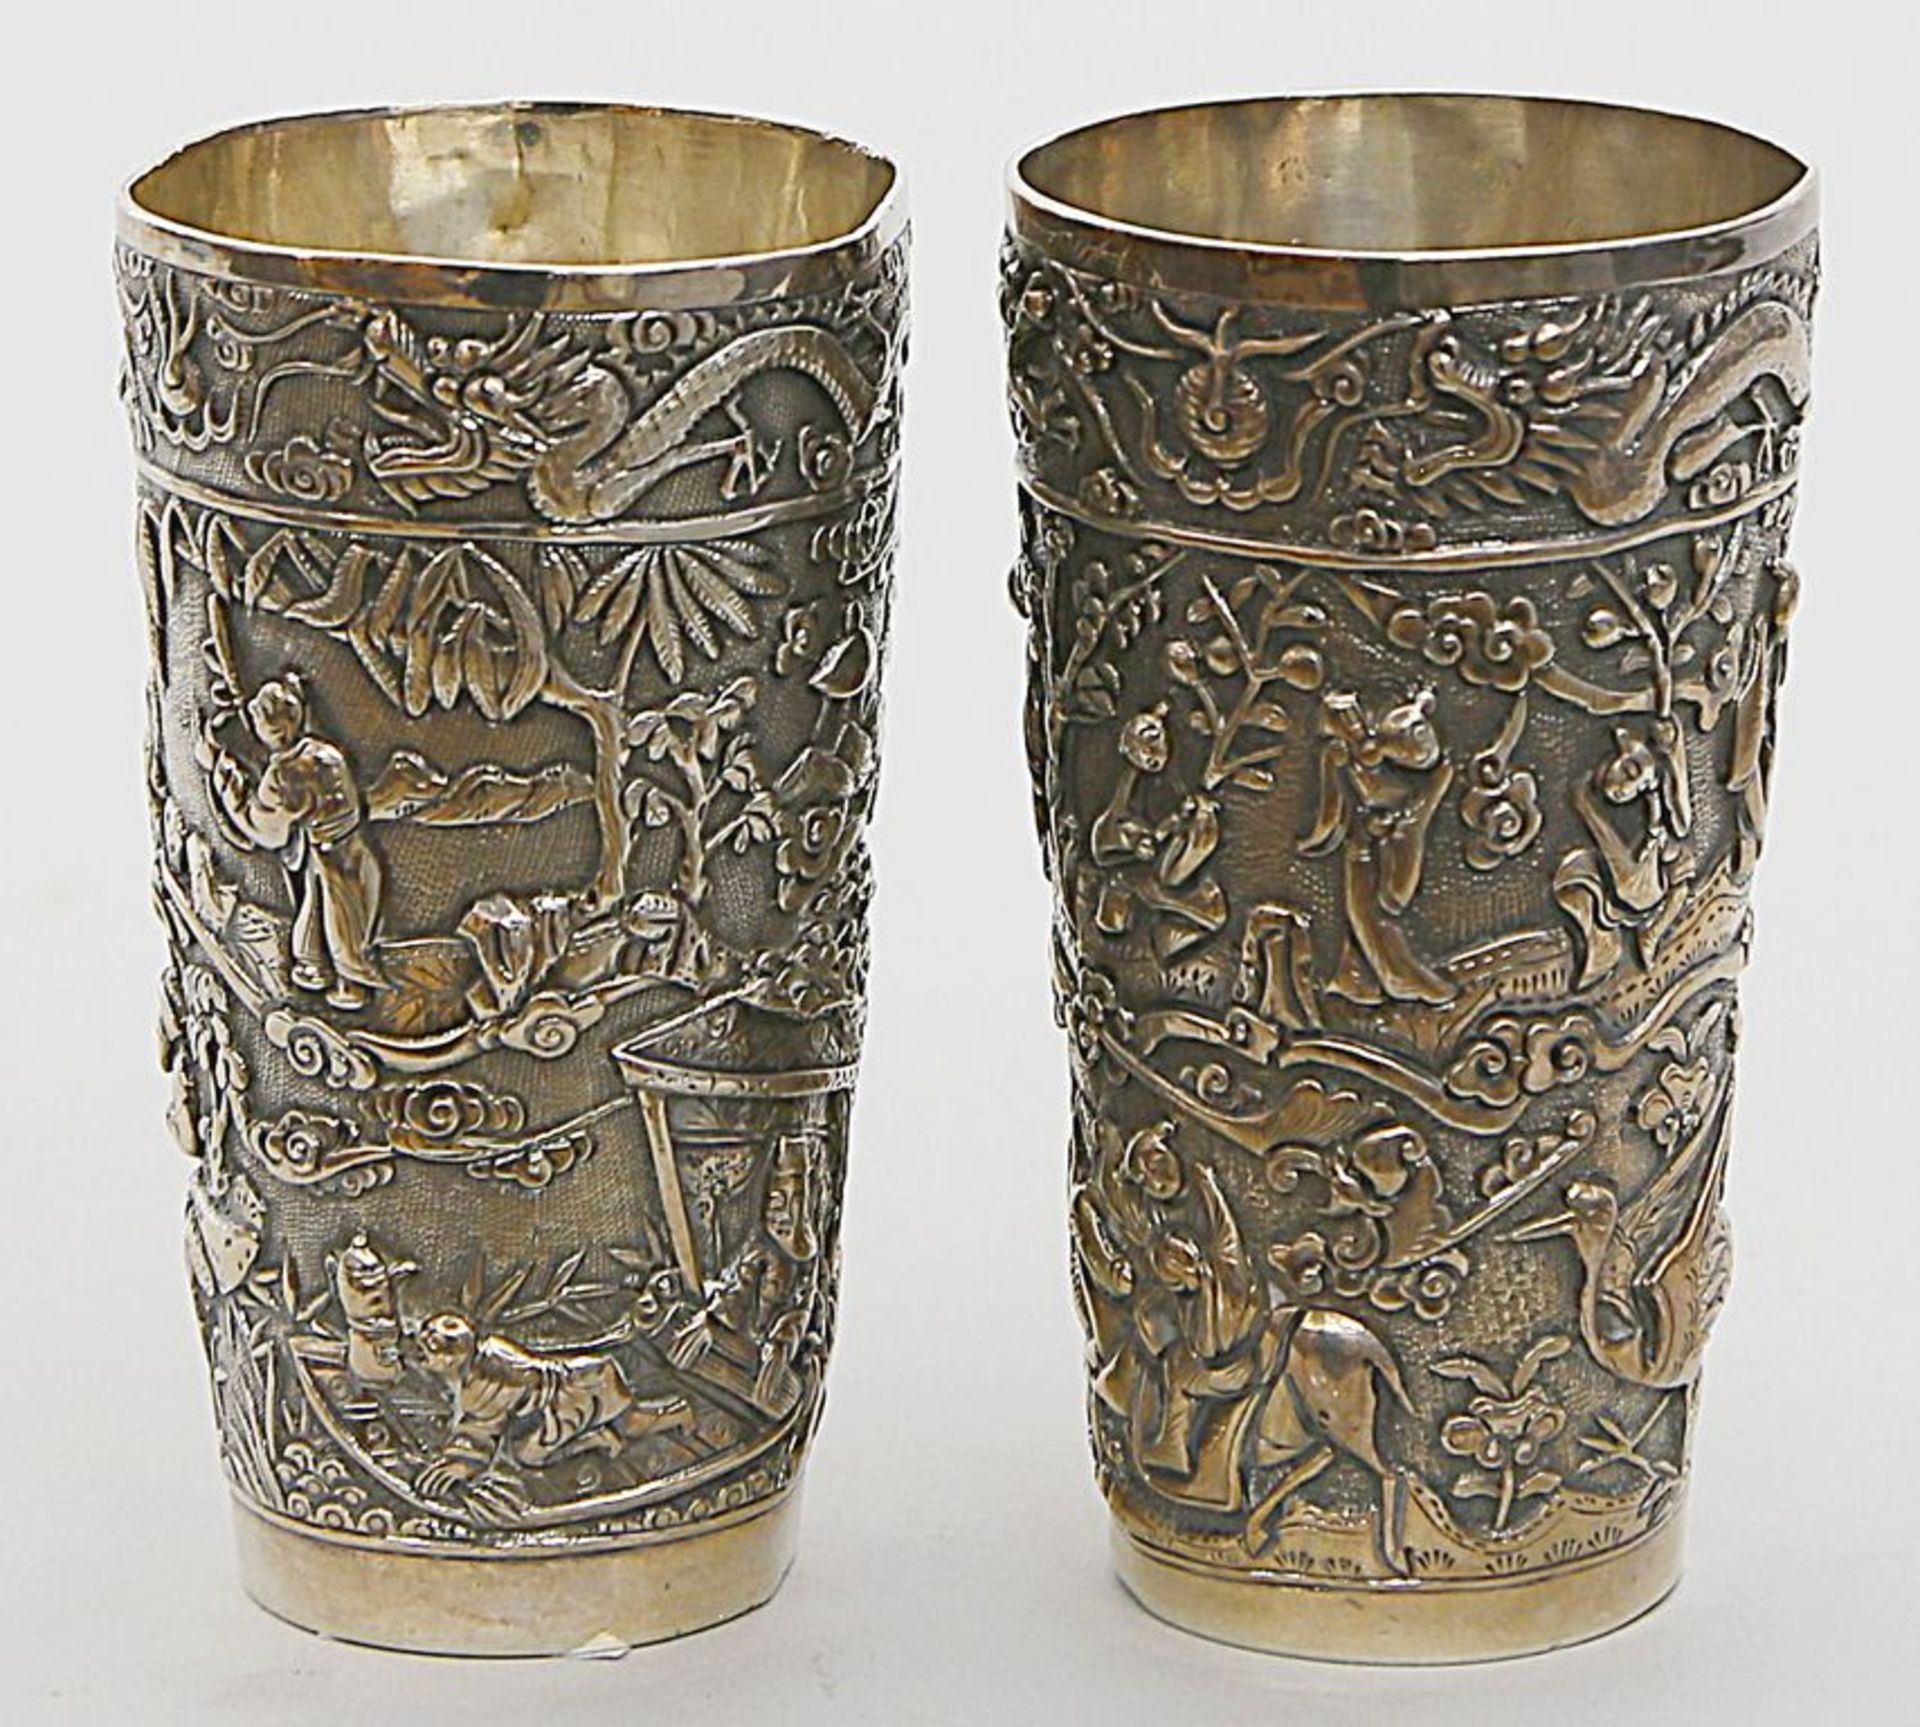 Paar Becher. Silber, 548 g. Konische Wandung, umlaufend mit reichem Reliefdekor von Landschaften mit